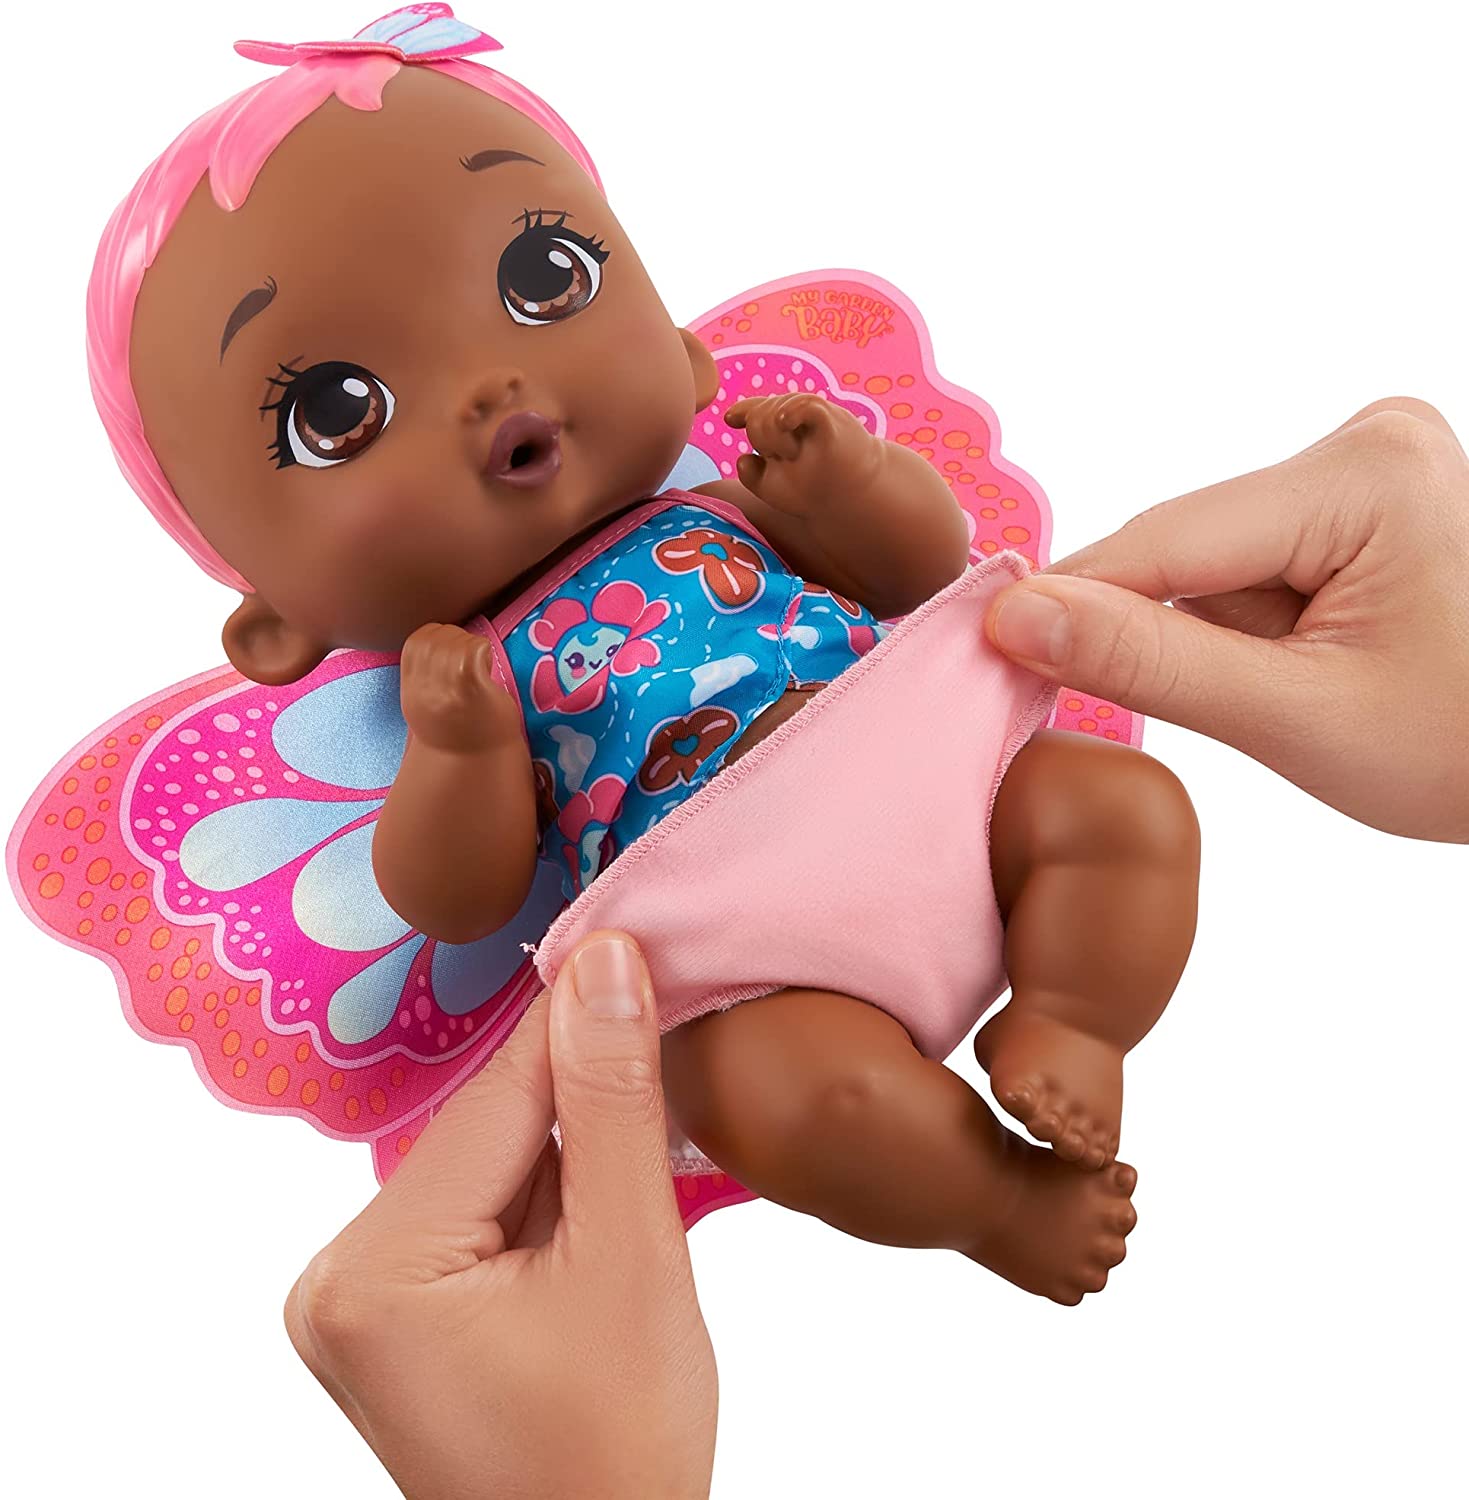 My Garden Baby - new cute toddler nurturing dolls from Mattel 